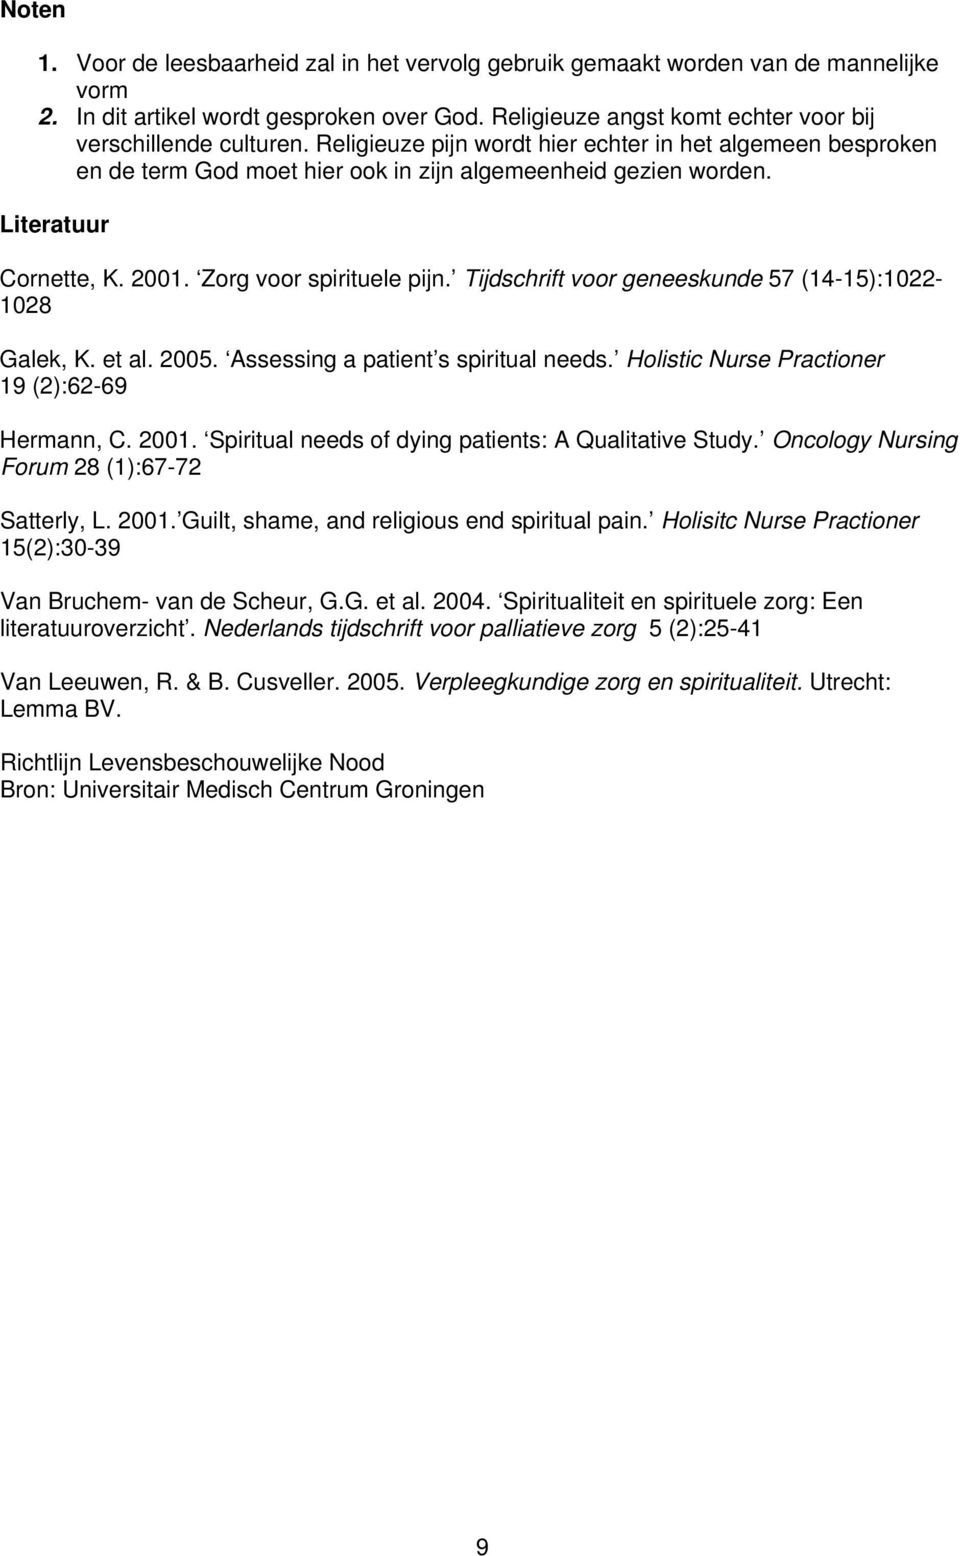 Tijdschrift voor geneeskunde 57 (14-15):1022-1028 Galek, K. et al. 2005. Assessing a patient s spiritual needs. Holistic Nurse Practioner 19 (2):62-69 Hermann, C. 2001.